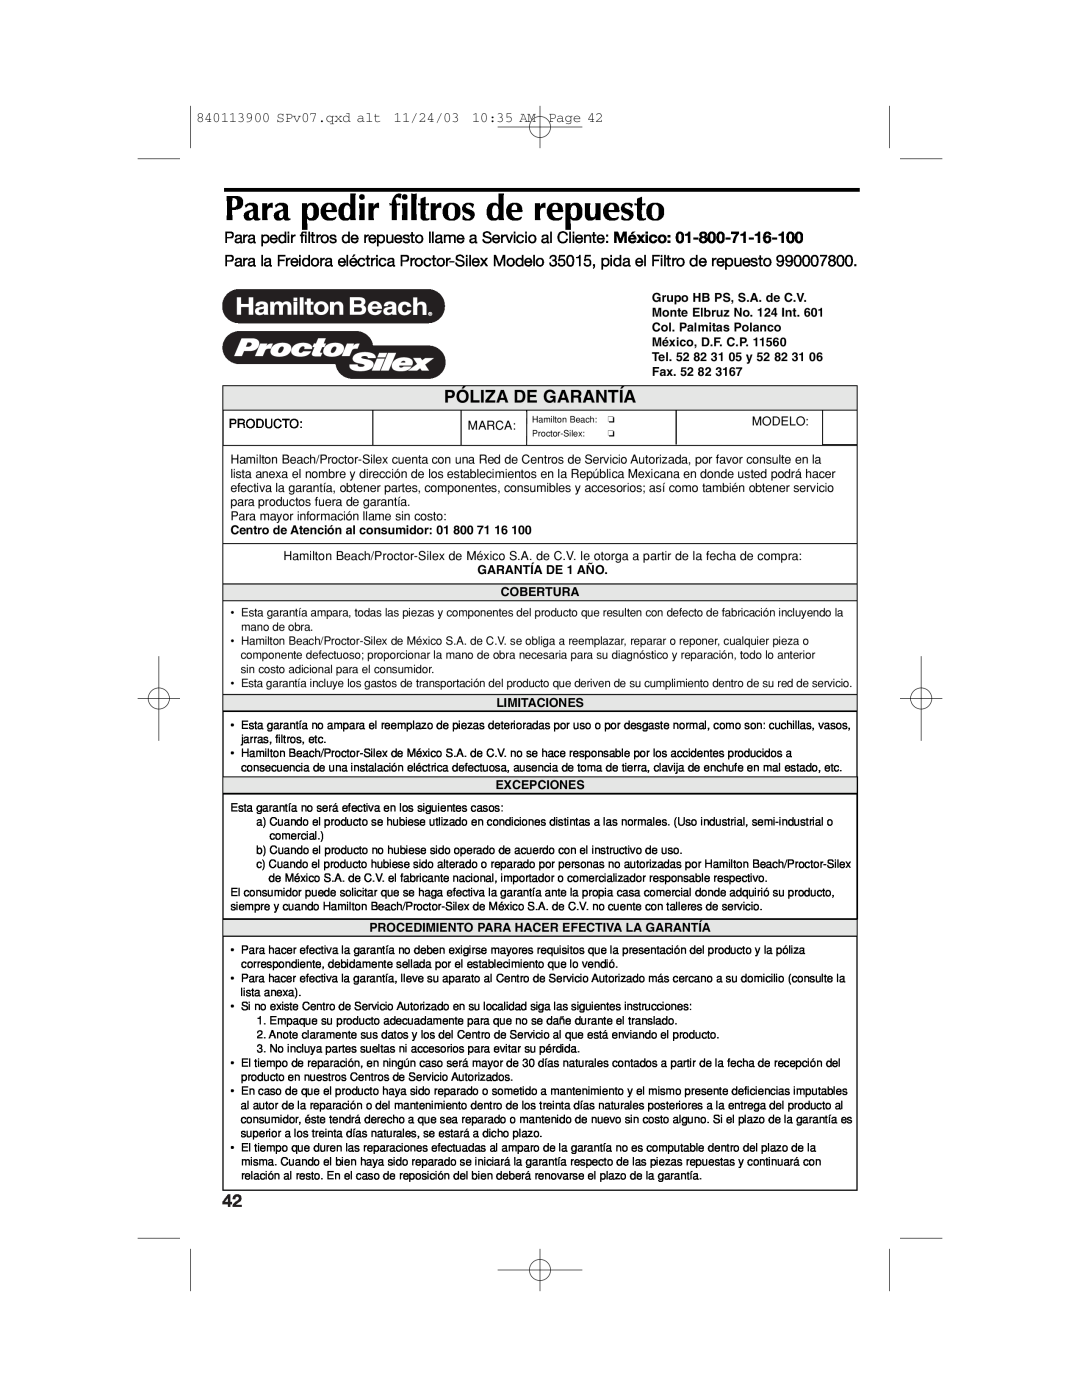 Hamilton Beach 35015 manual Para pedir filtros de repuesto, Póliza De Garantía 